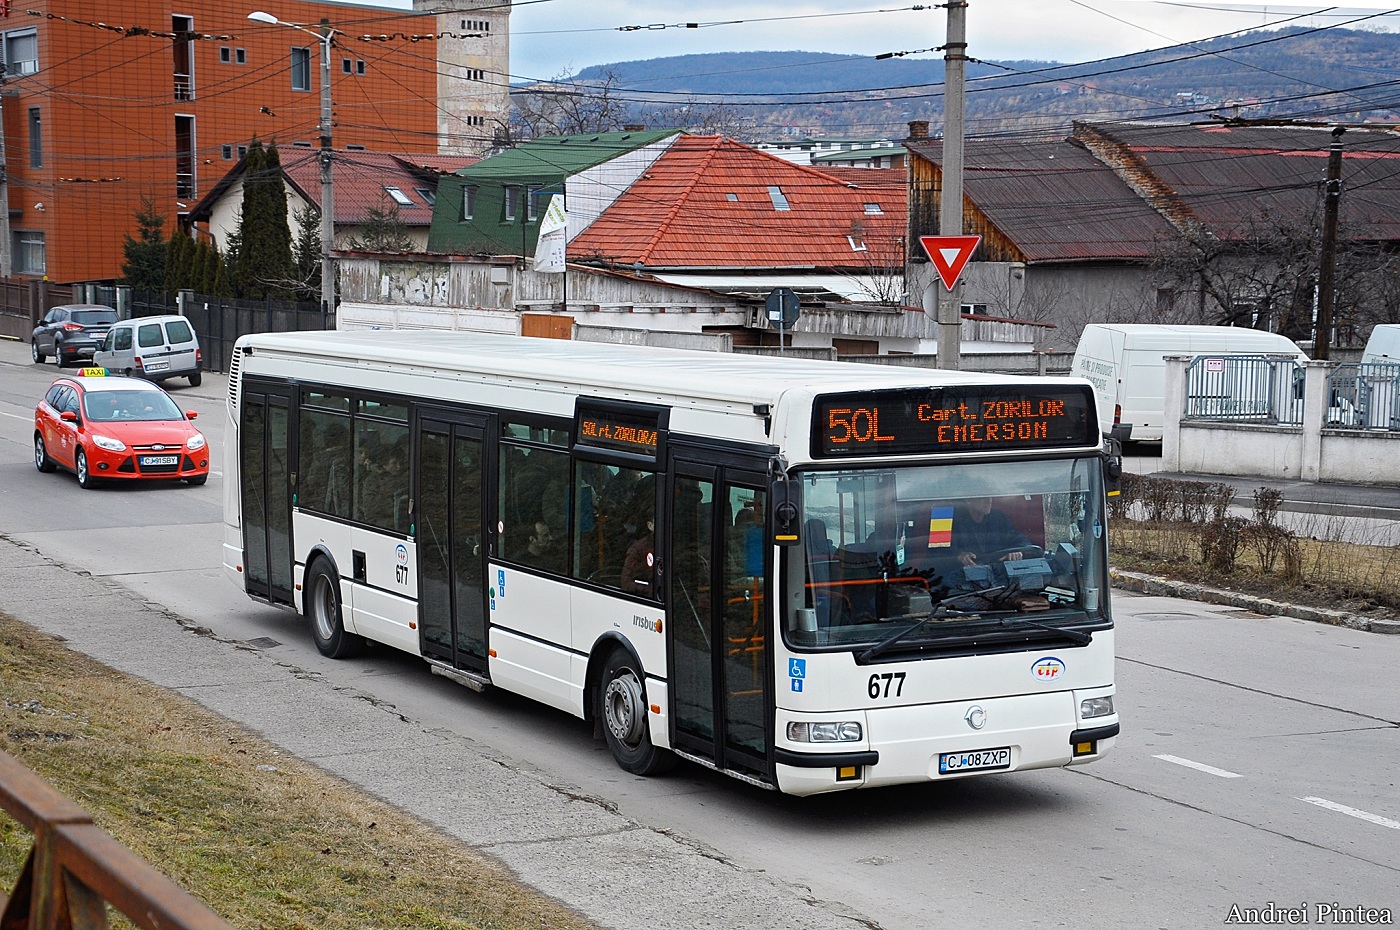 Irisbus Agora S #677